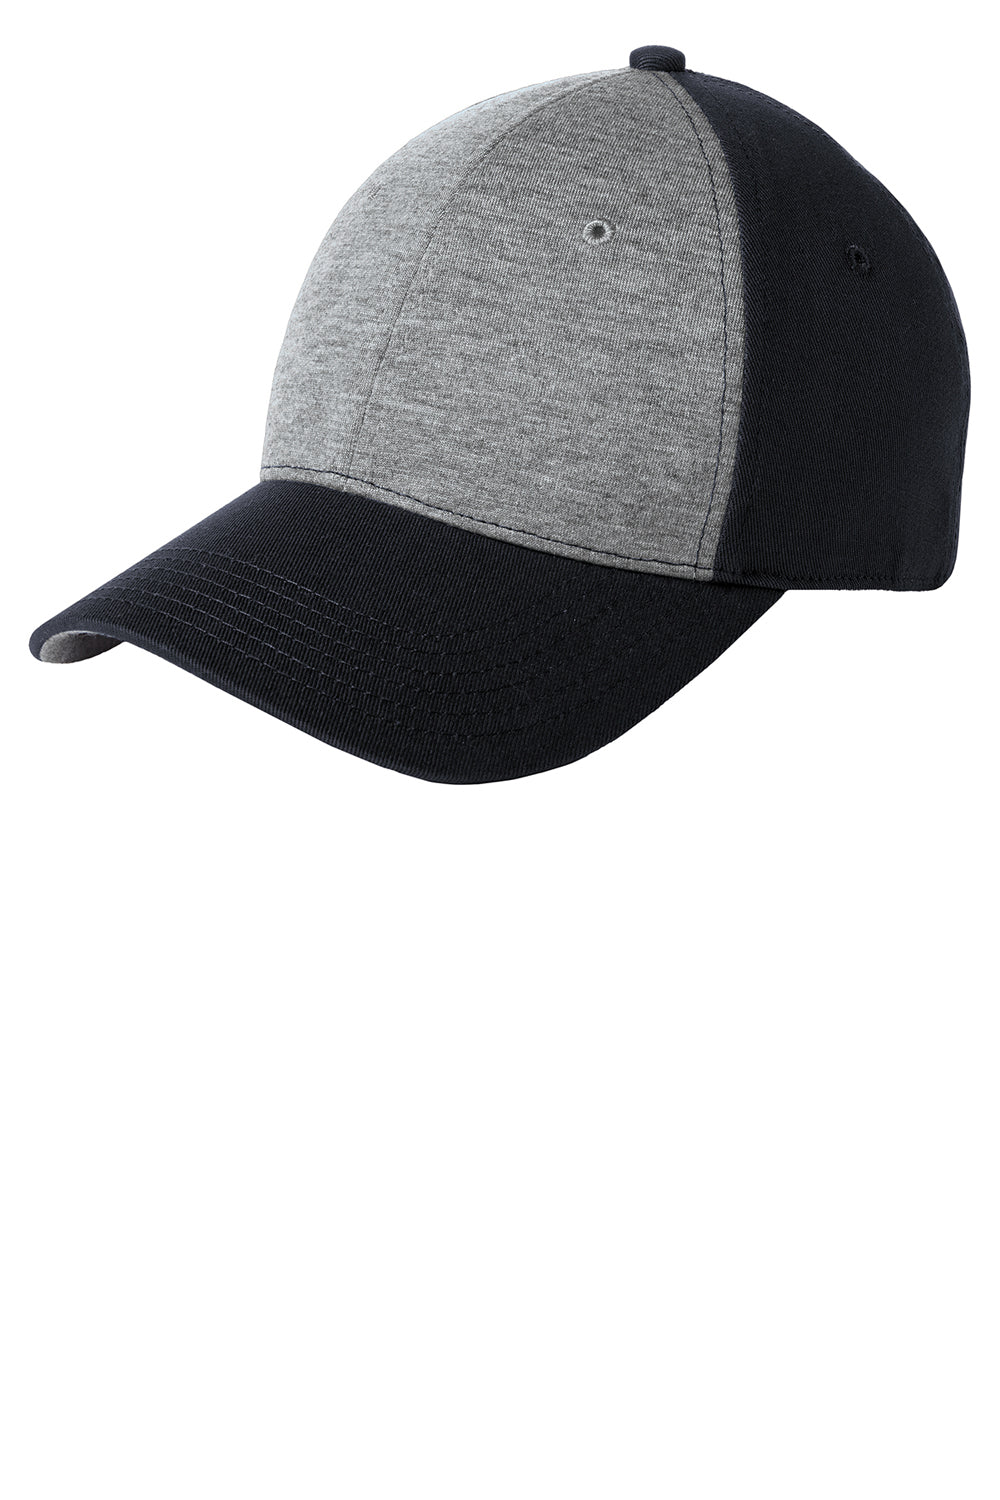 Sport-Tek STC18 Mens Adjustable Hat Heather Vintage Grey/Black Front